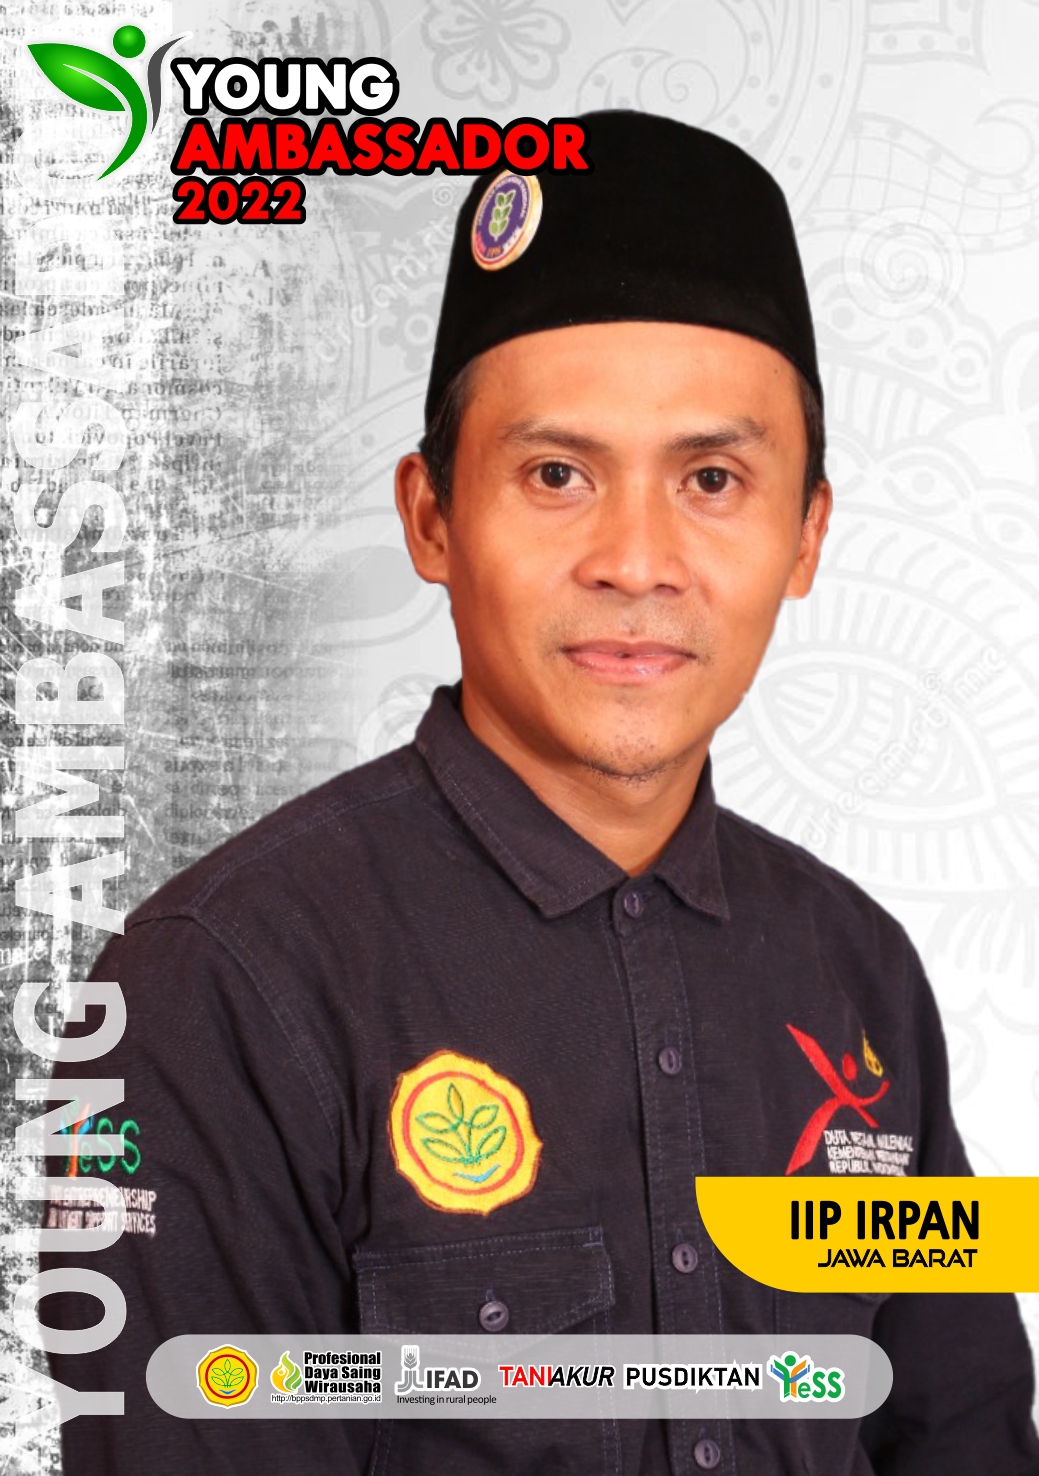 IIP Irpan